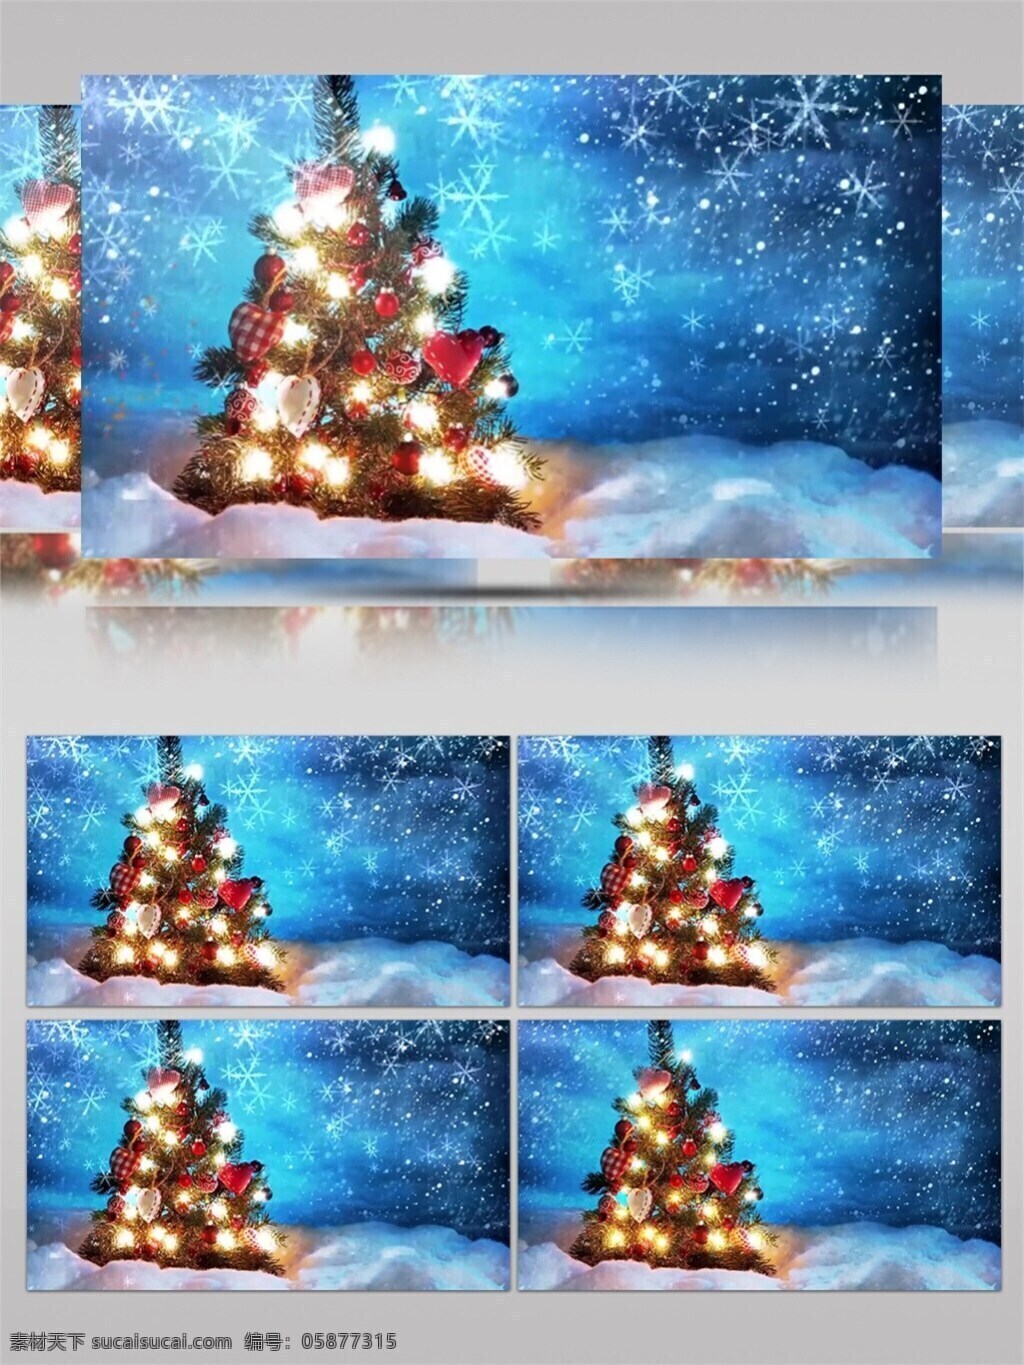 飘 雪 圣诞树 圣诞节 视频 高质量 背景 好看背景素材 蓝色光芒 美景动态背景 飘雪圣诞树 炫酷灯光